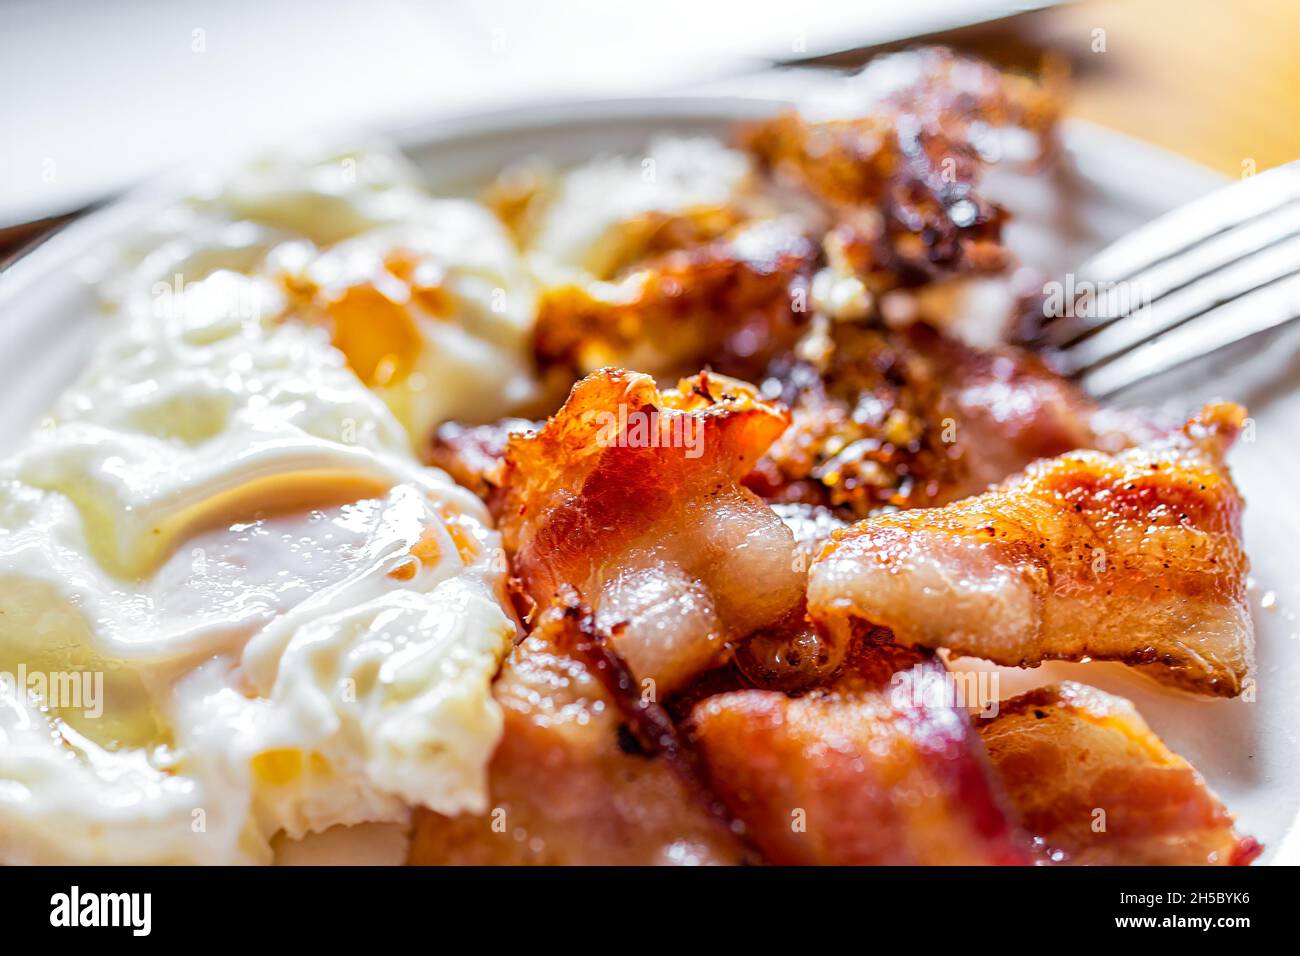 Macrofumo di strisce di pancetta fresca fritte fatte in casa e uova su piatto bianco con forchetta sul tavolo da cucina in legno Foto Stock